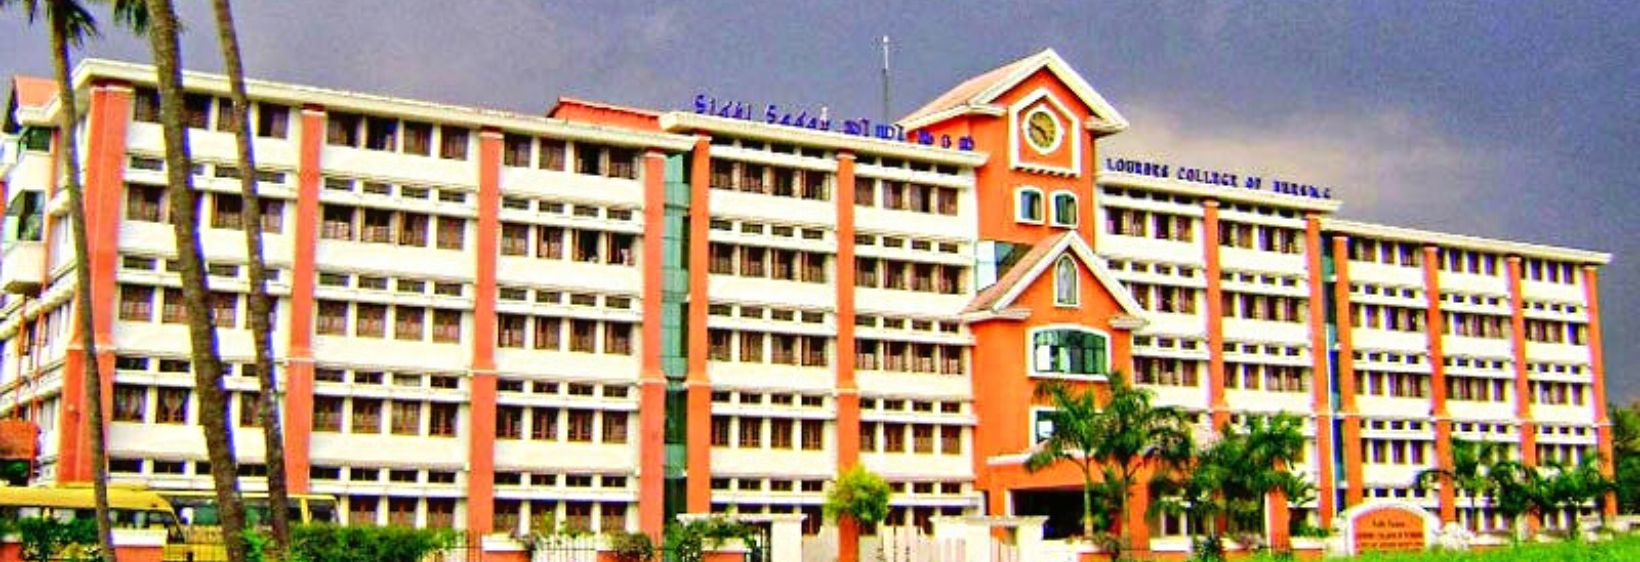 Lourdes College of Nursing - Ernakulam